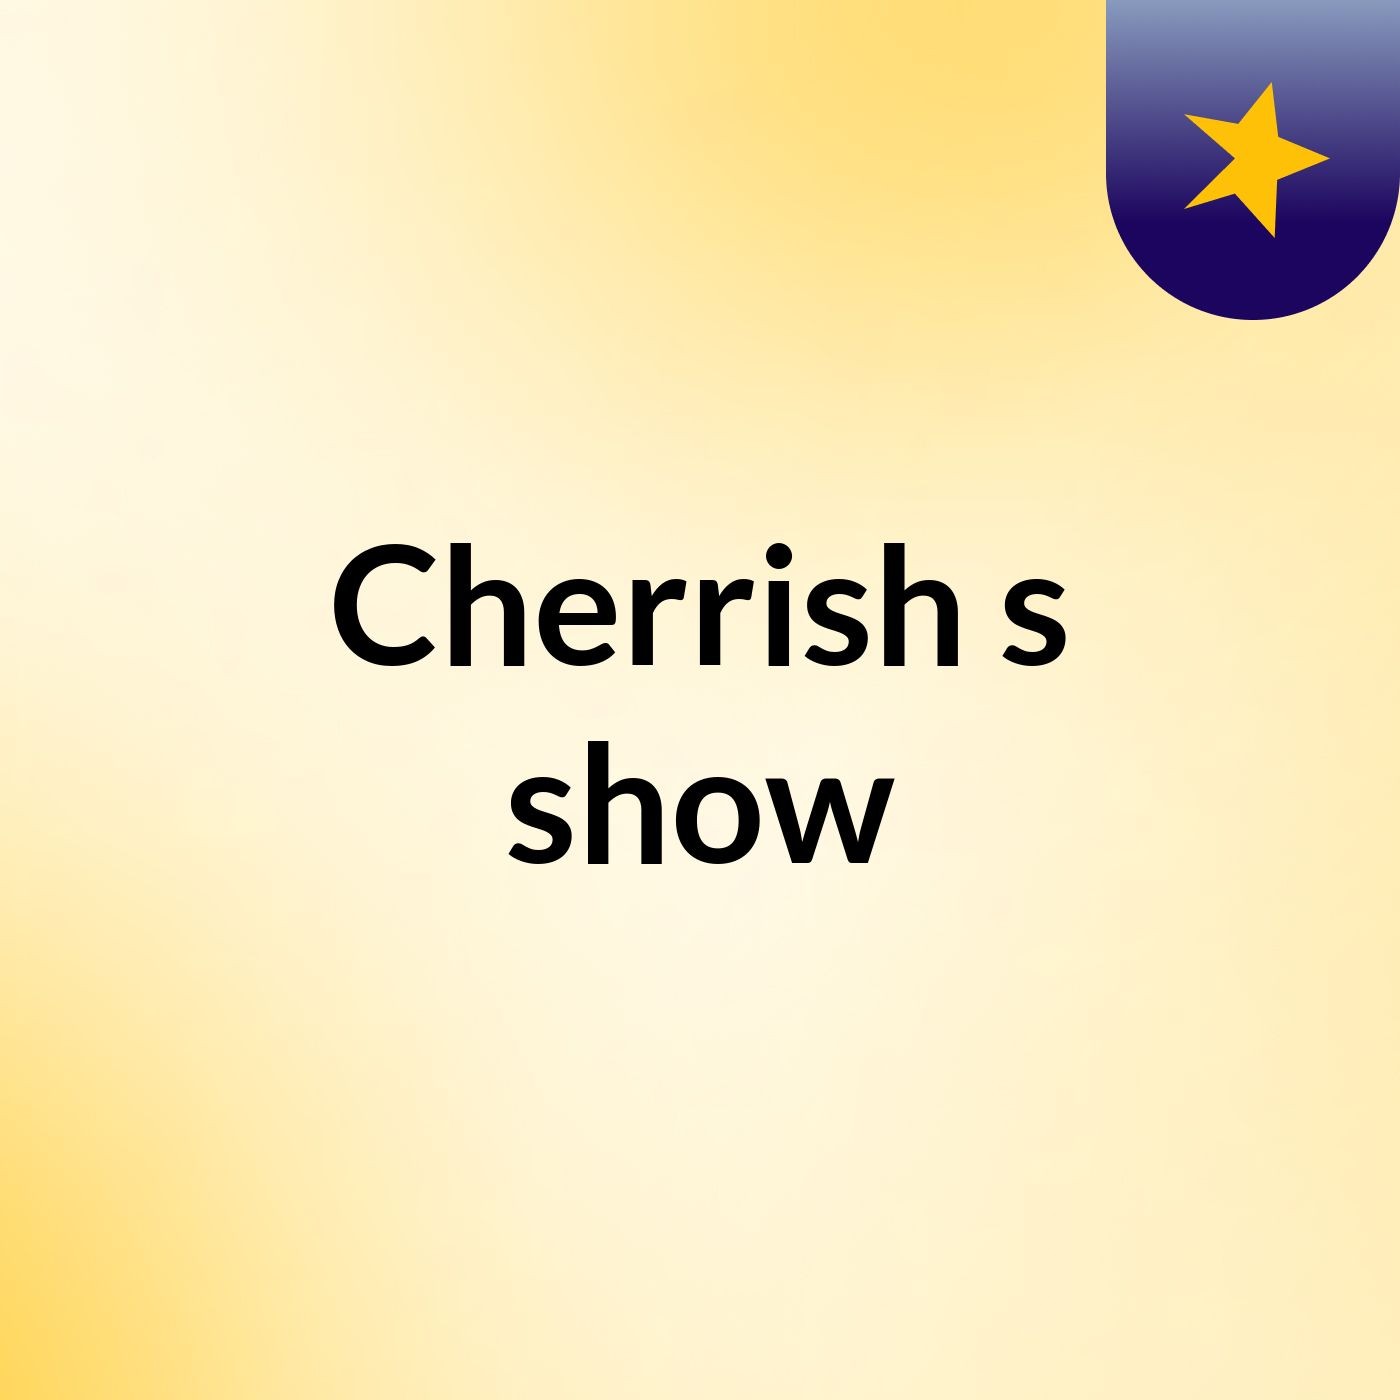 Cherrish's show